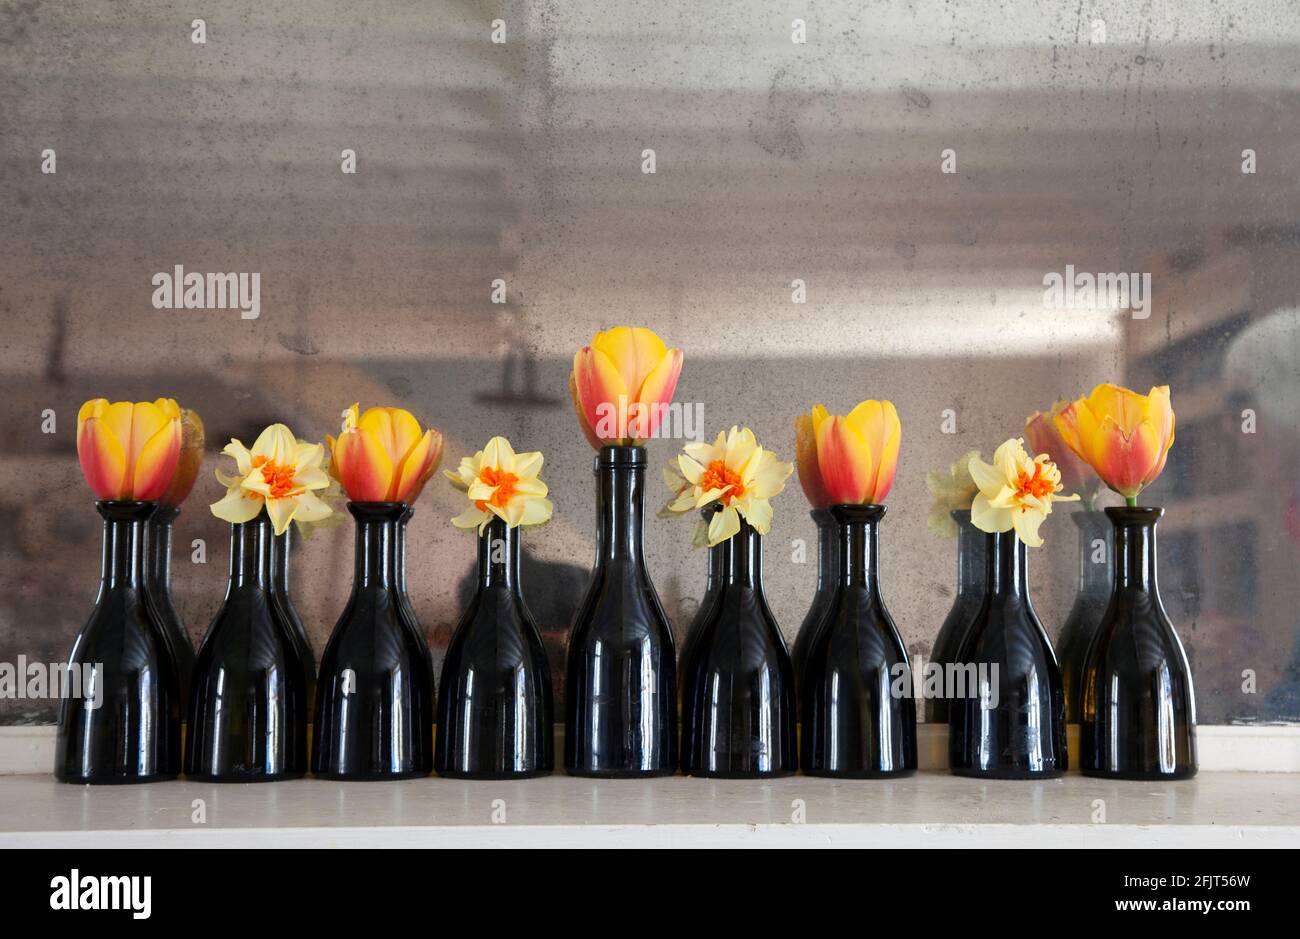 Tulipanes y narcisos en botellas de vinagre balsámico de Lidl Foto de stock